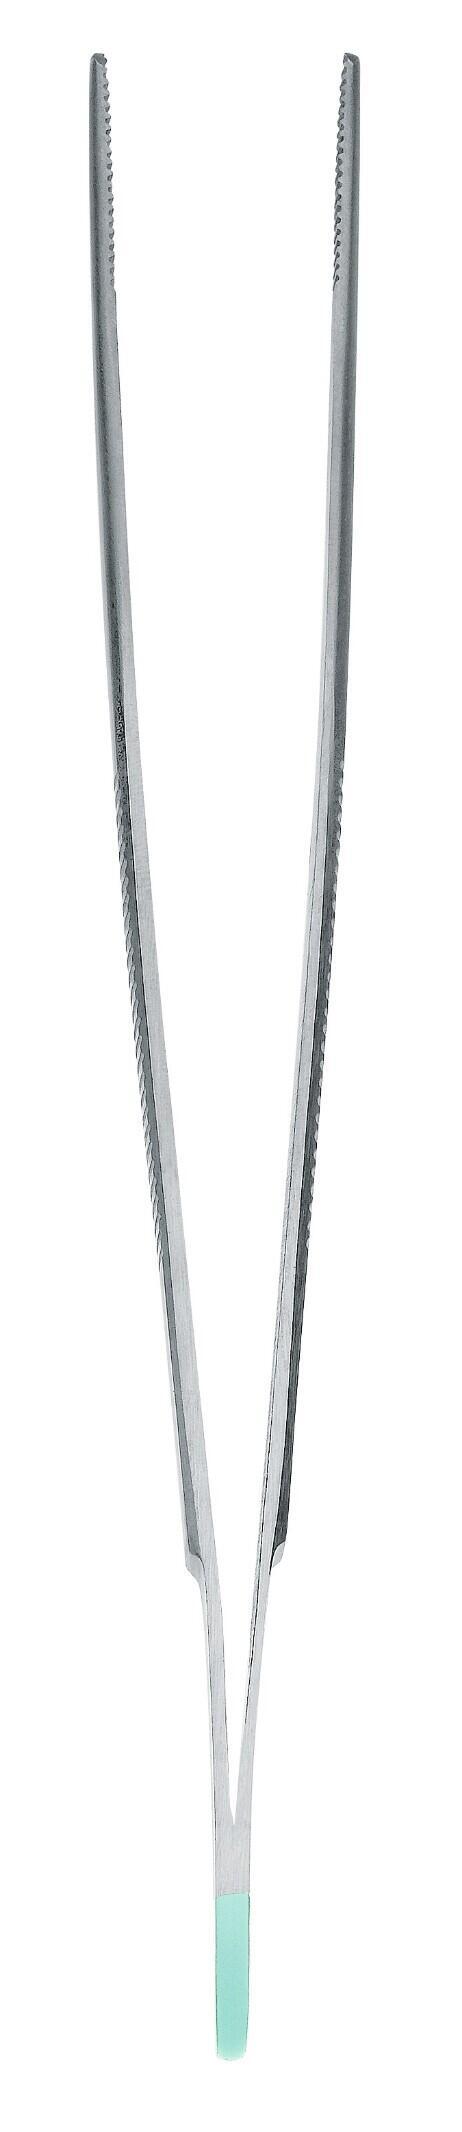 Instrumento para pecas pinzas estándar anatómicamente rectas 14cm